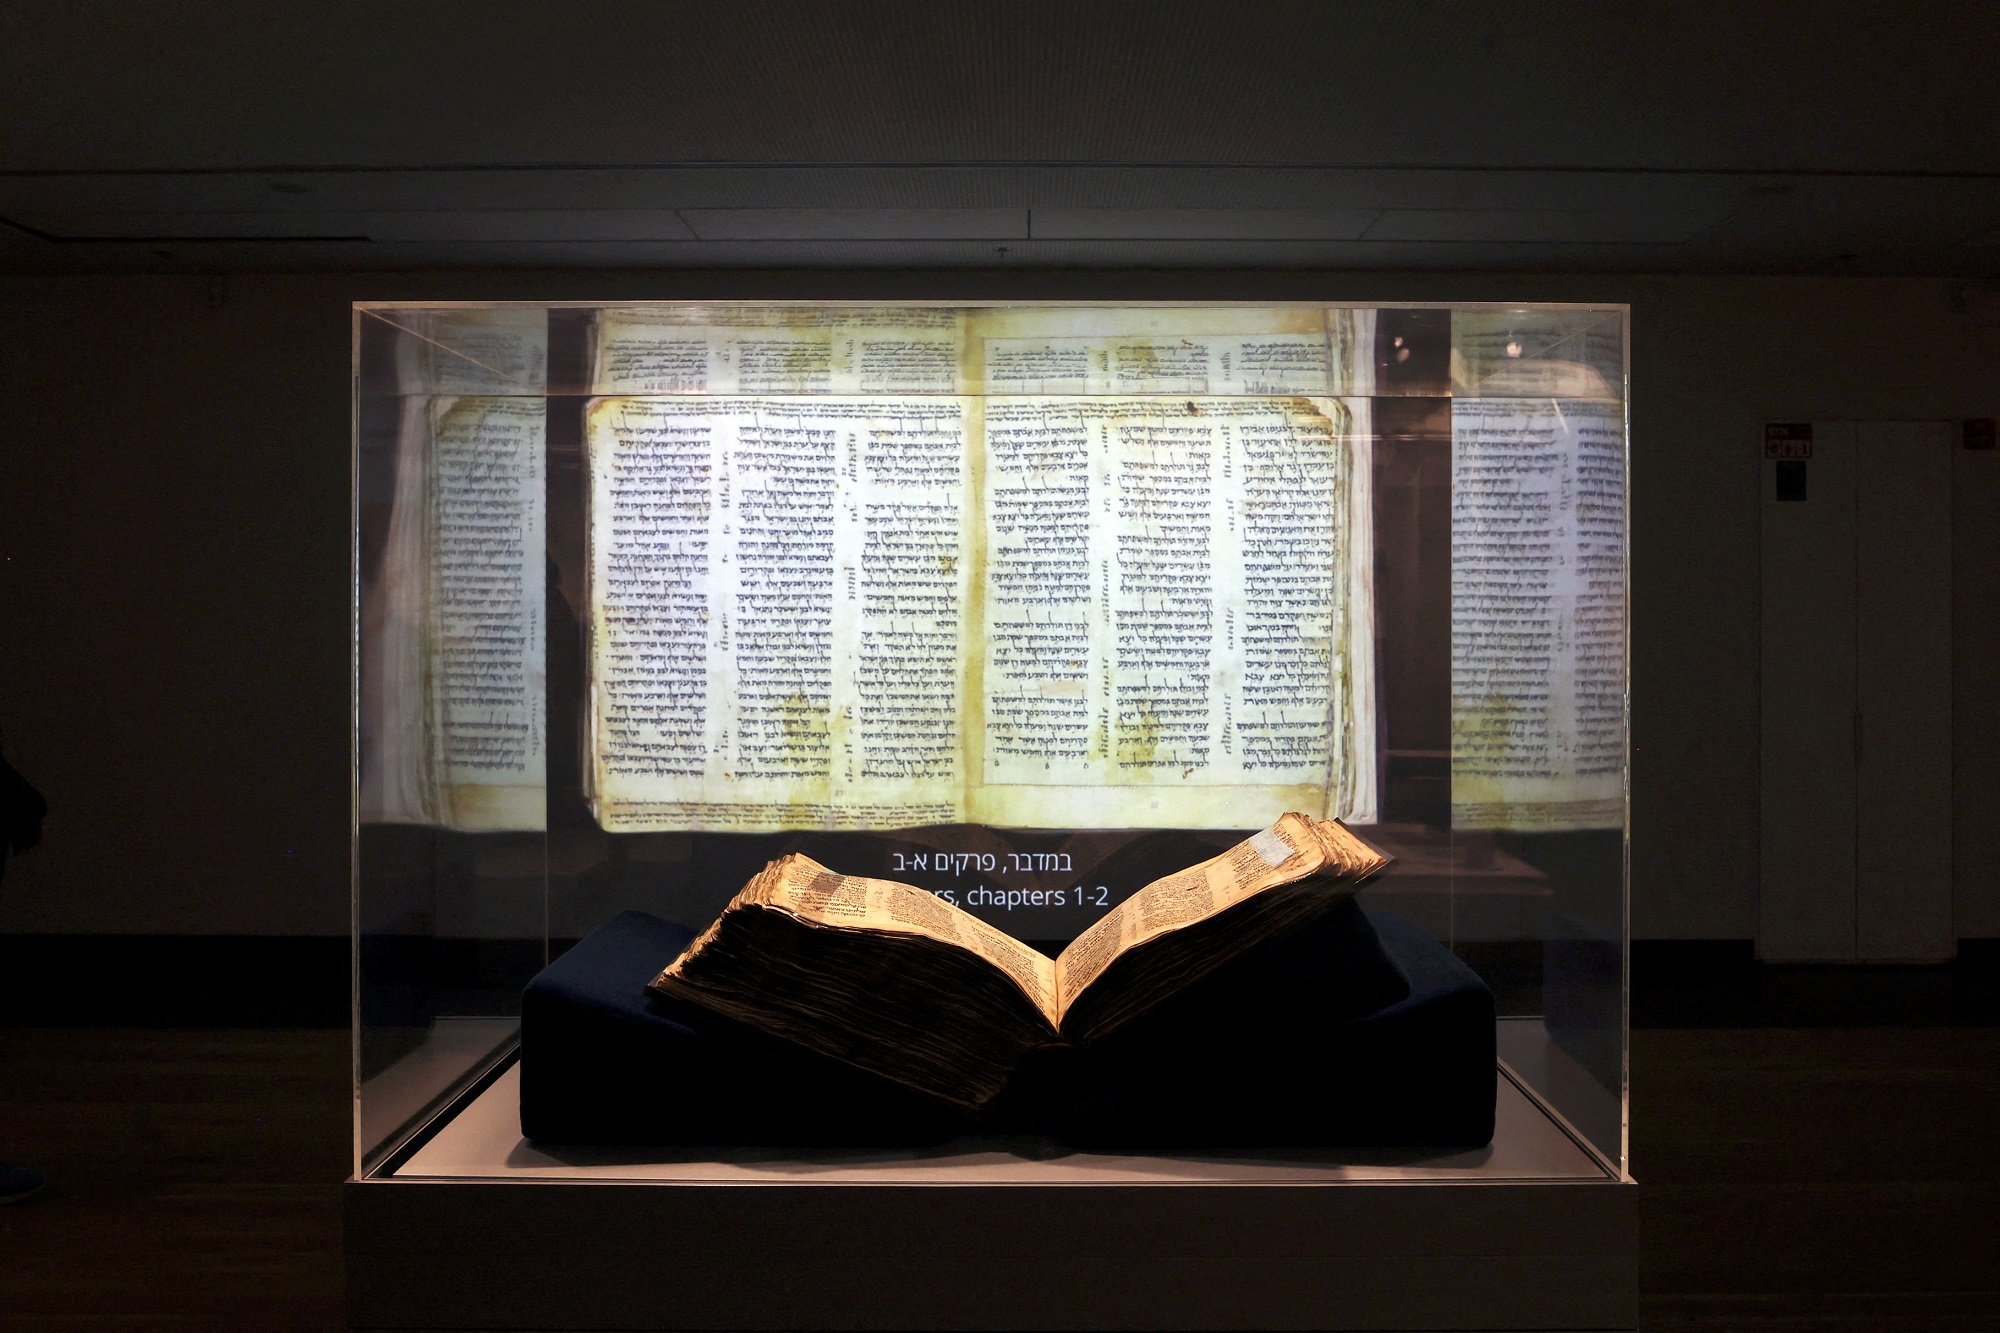  أقدم كتاب مقدس بالعالم